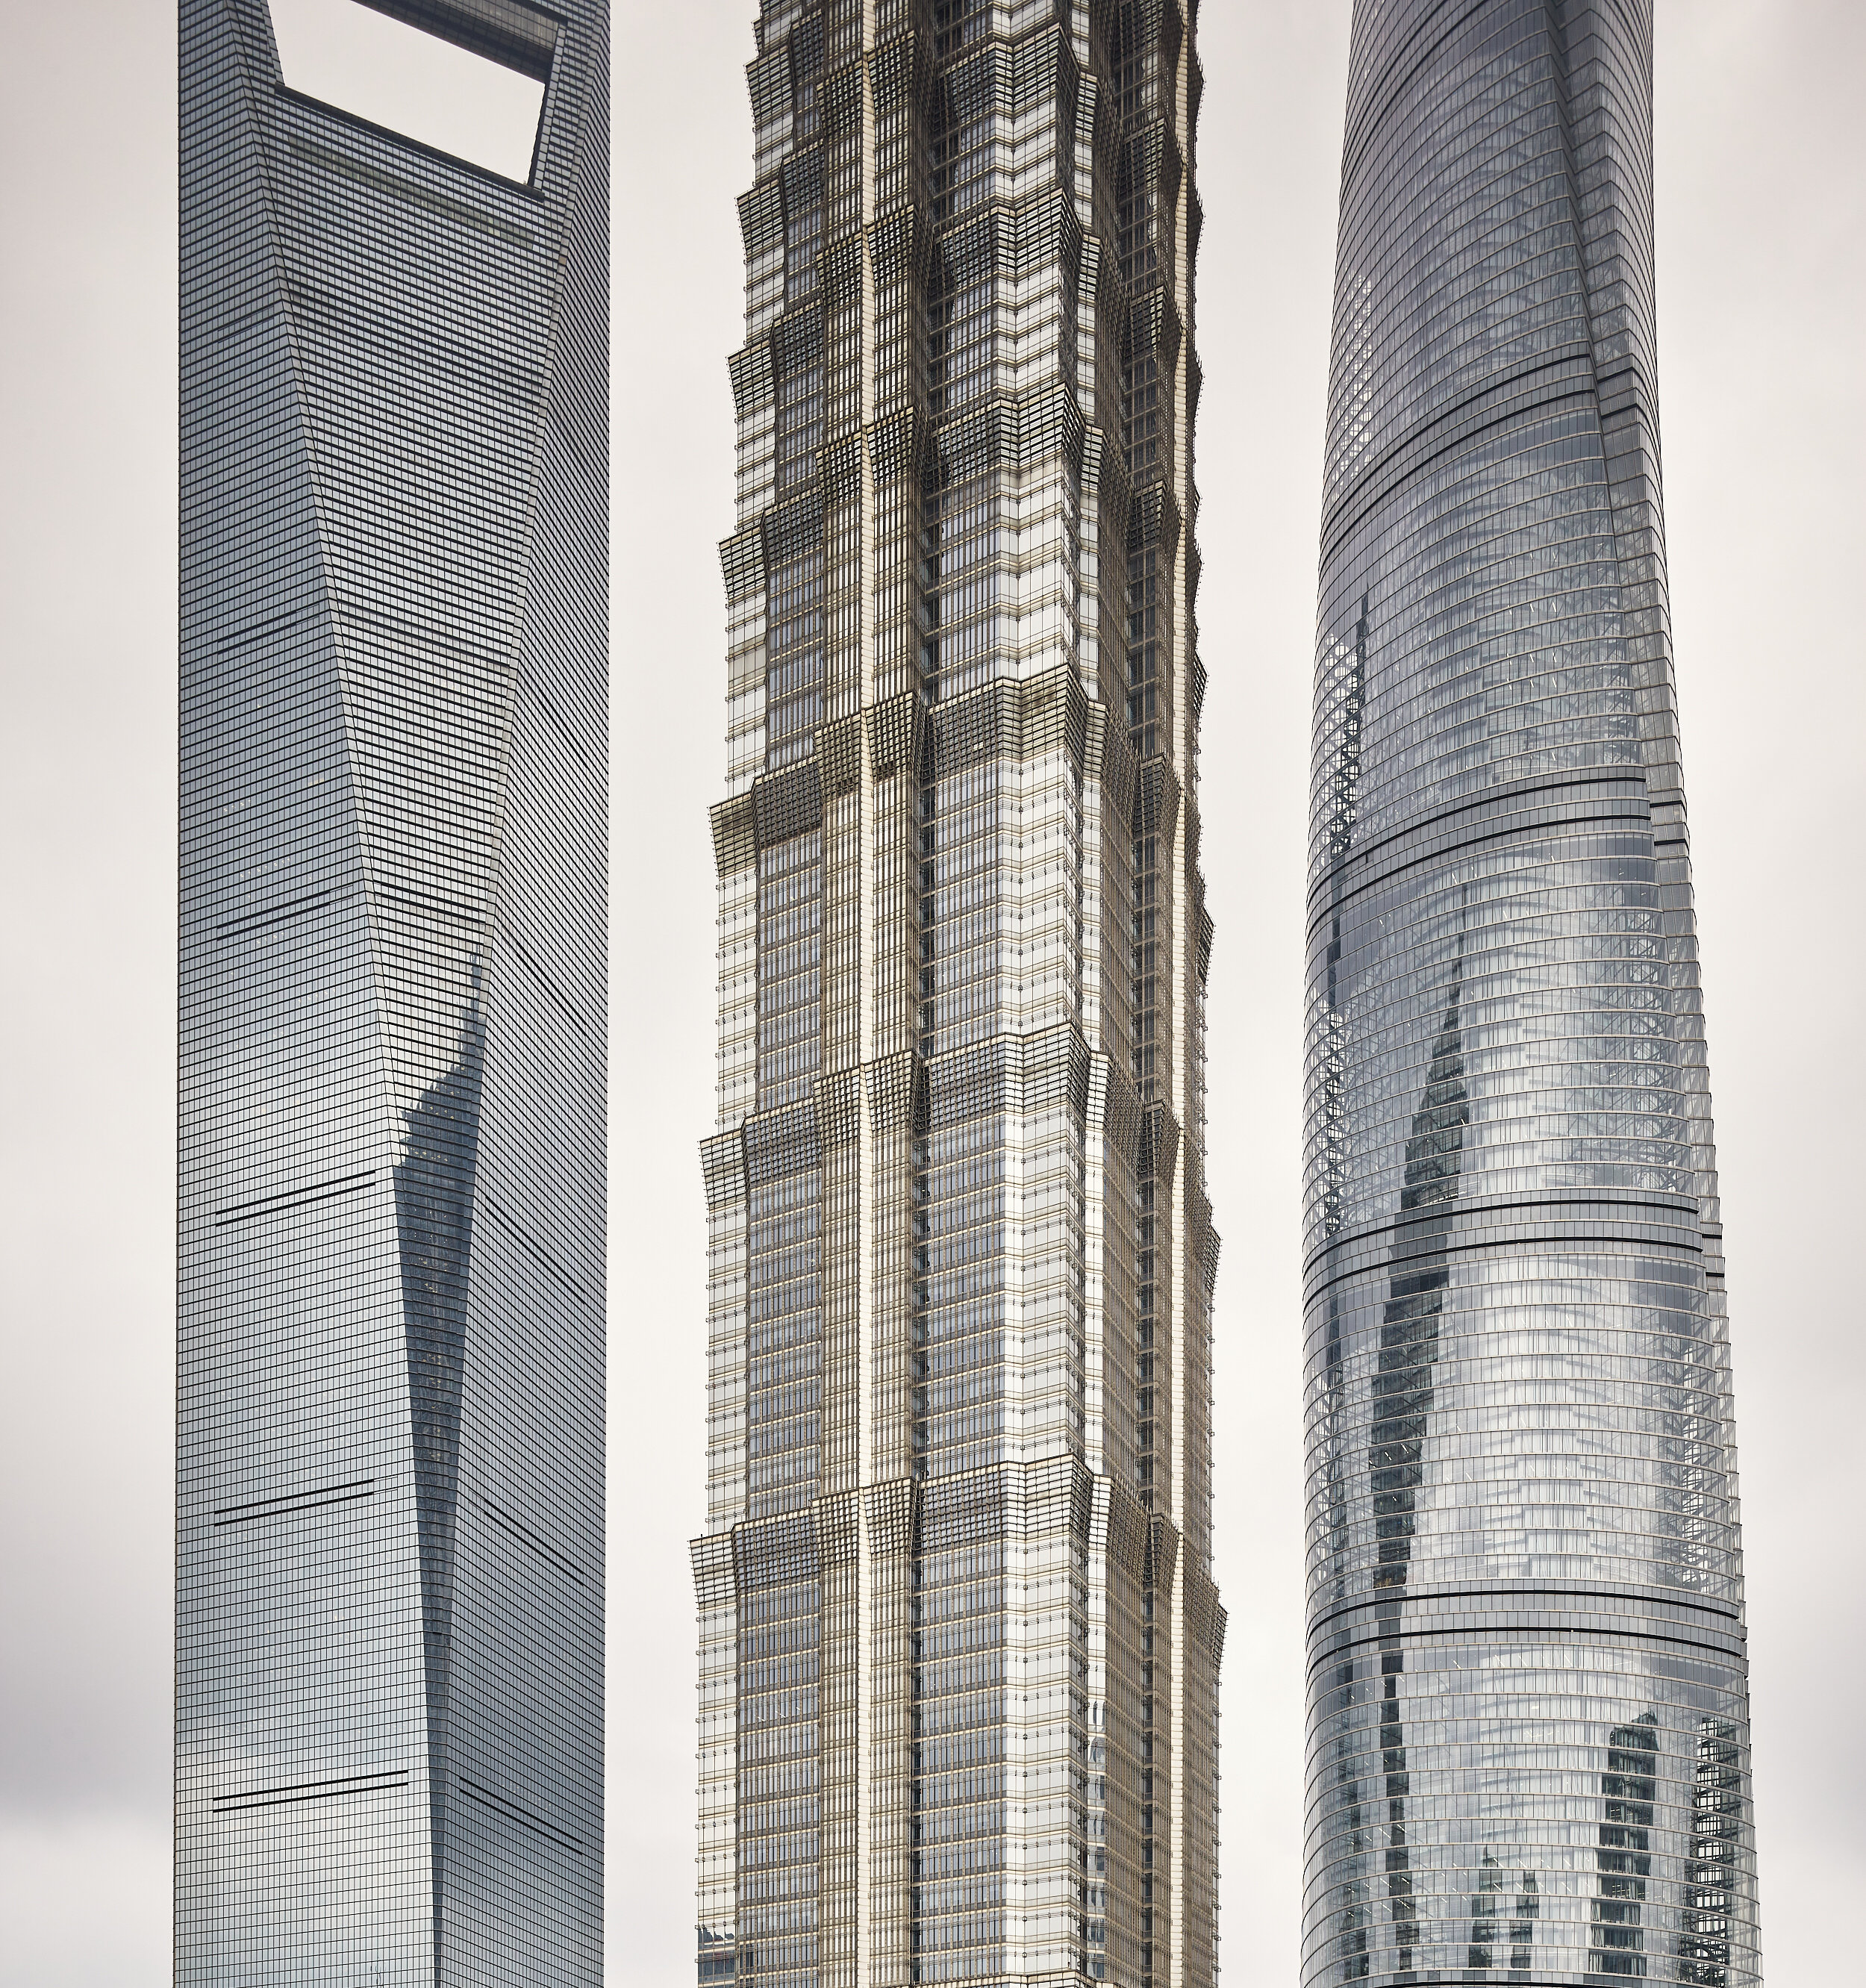  pudong buildings, Shanghai, China, 2017 